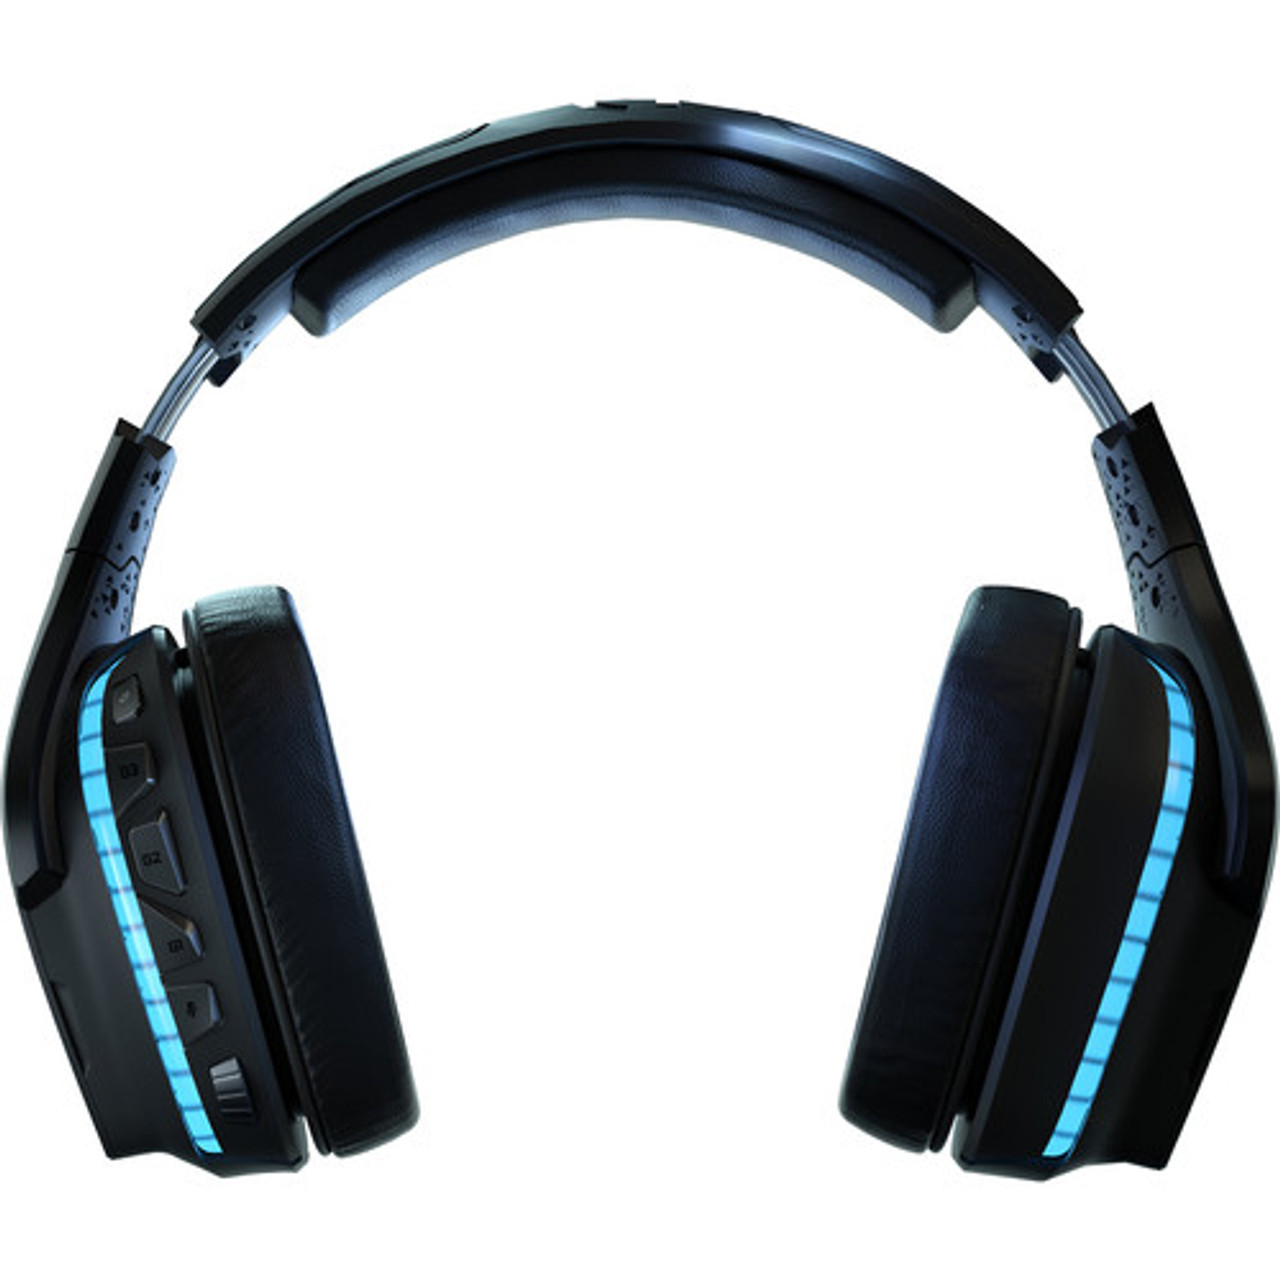 Logitech G935 On-Ear Wireless Headset - Black/Blue for sale online